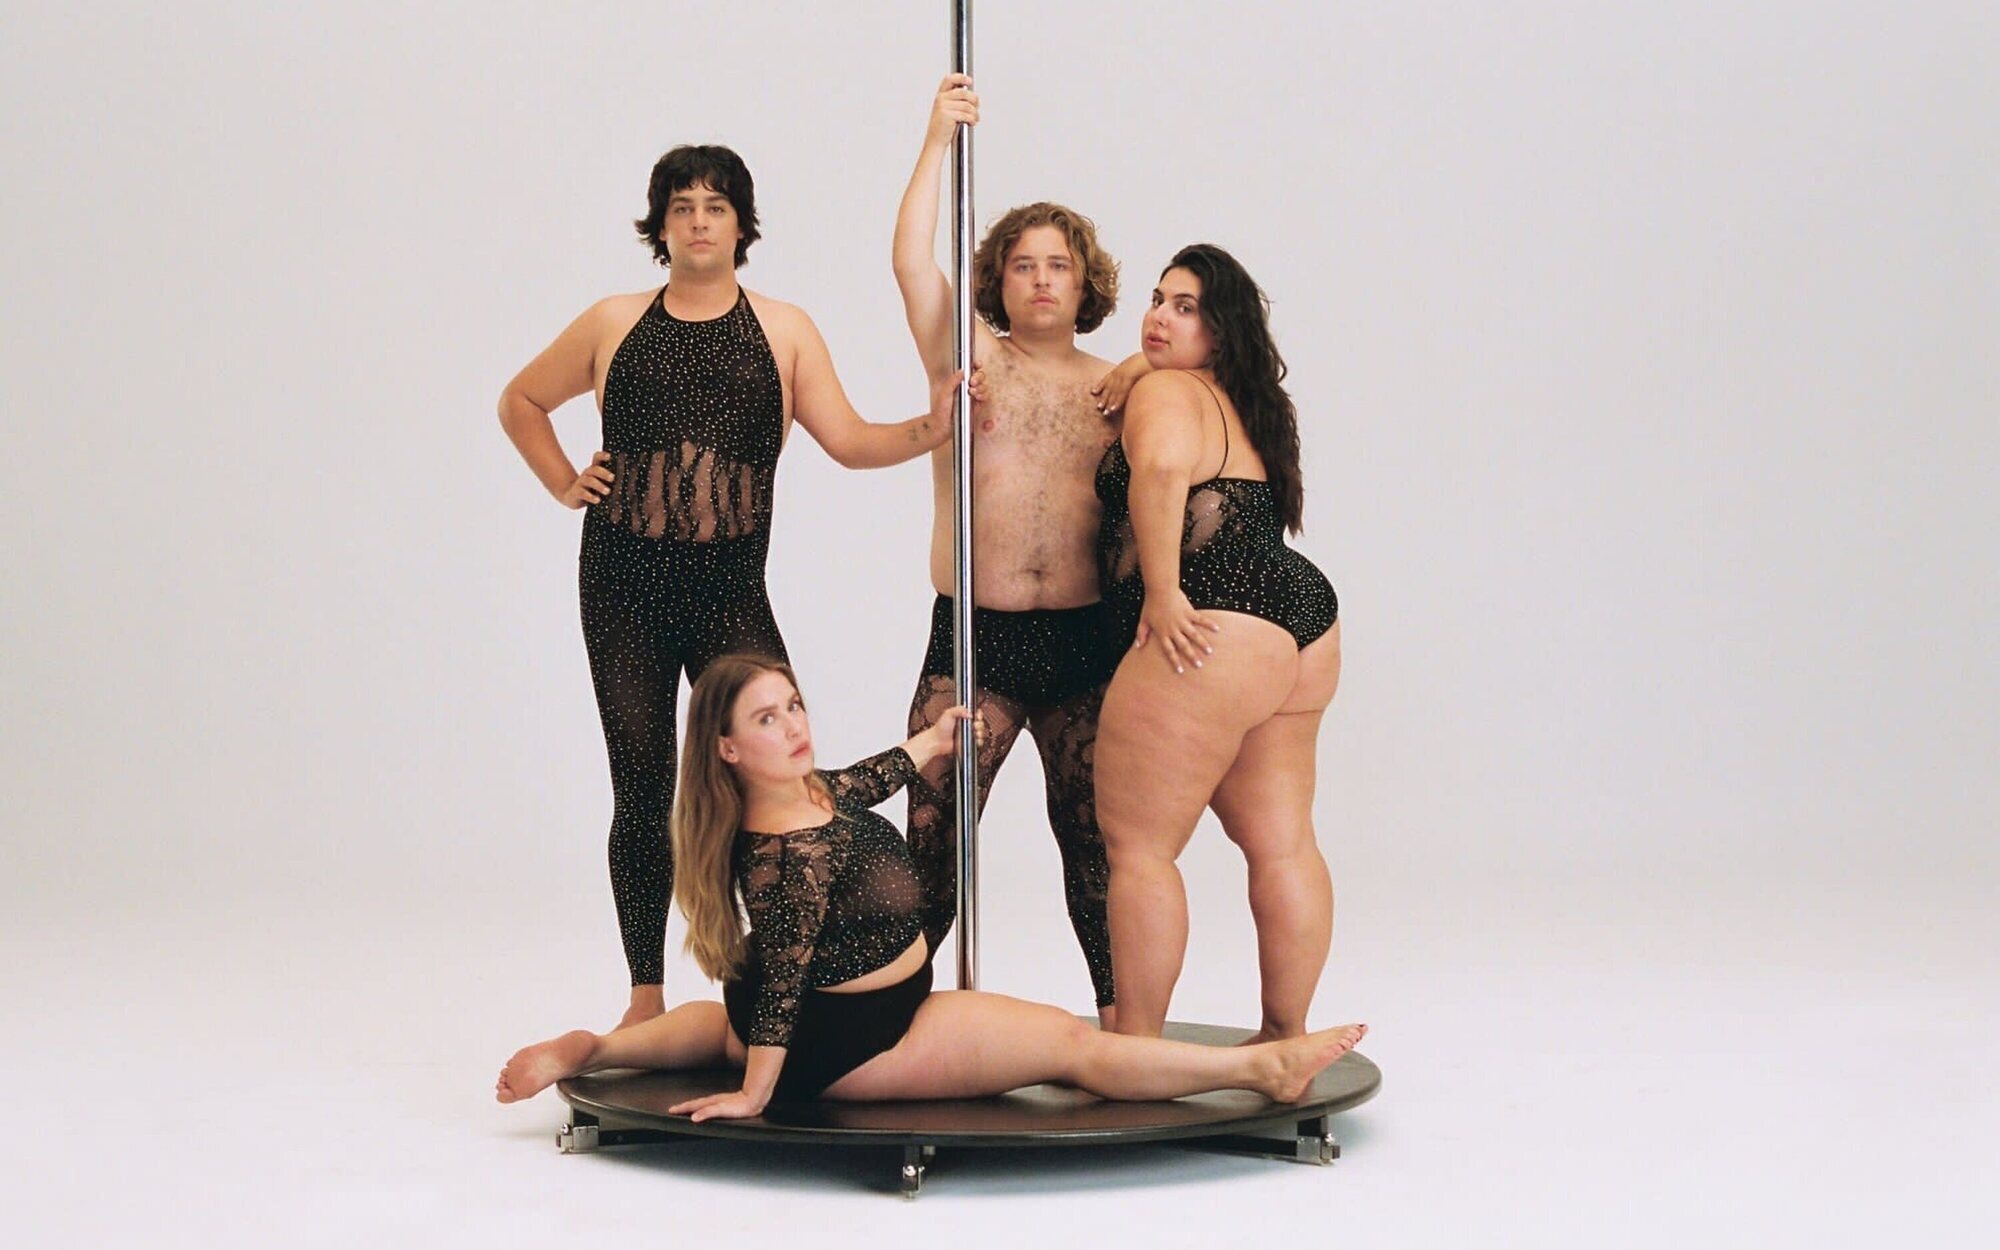 Carlos González lanza su versión de "Baila morena" en un videoclip con cuatro fuegotes dándolo todo